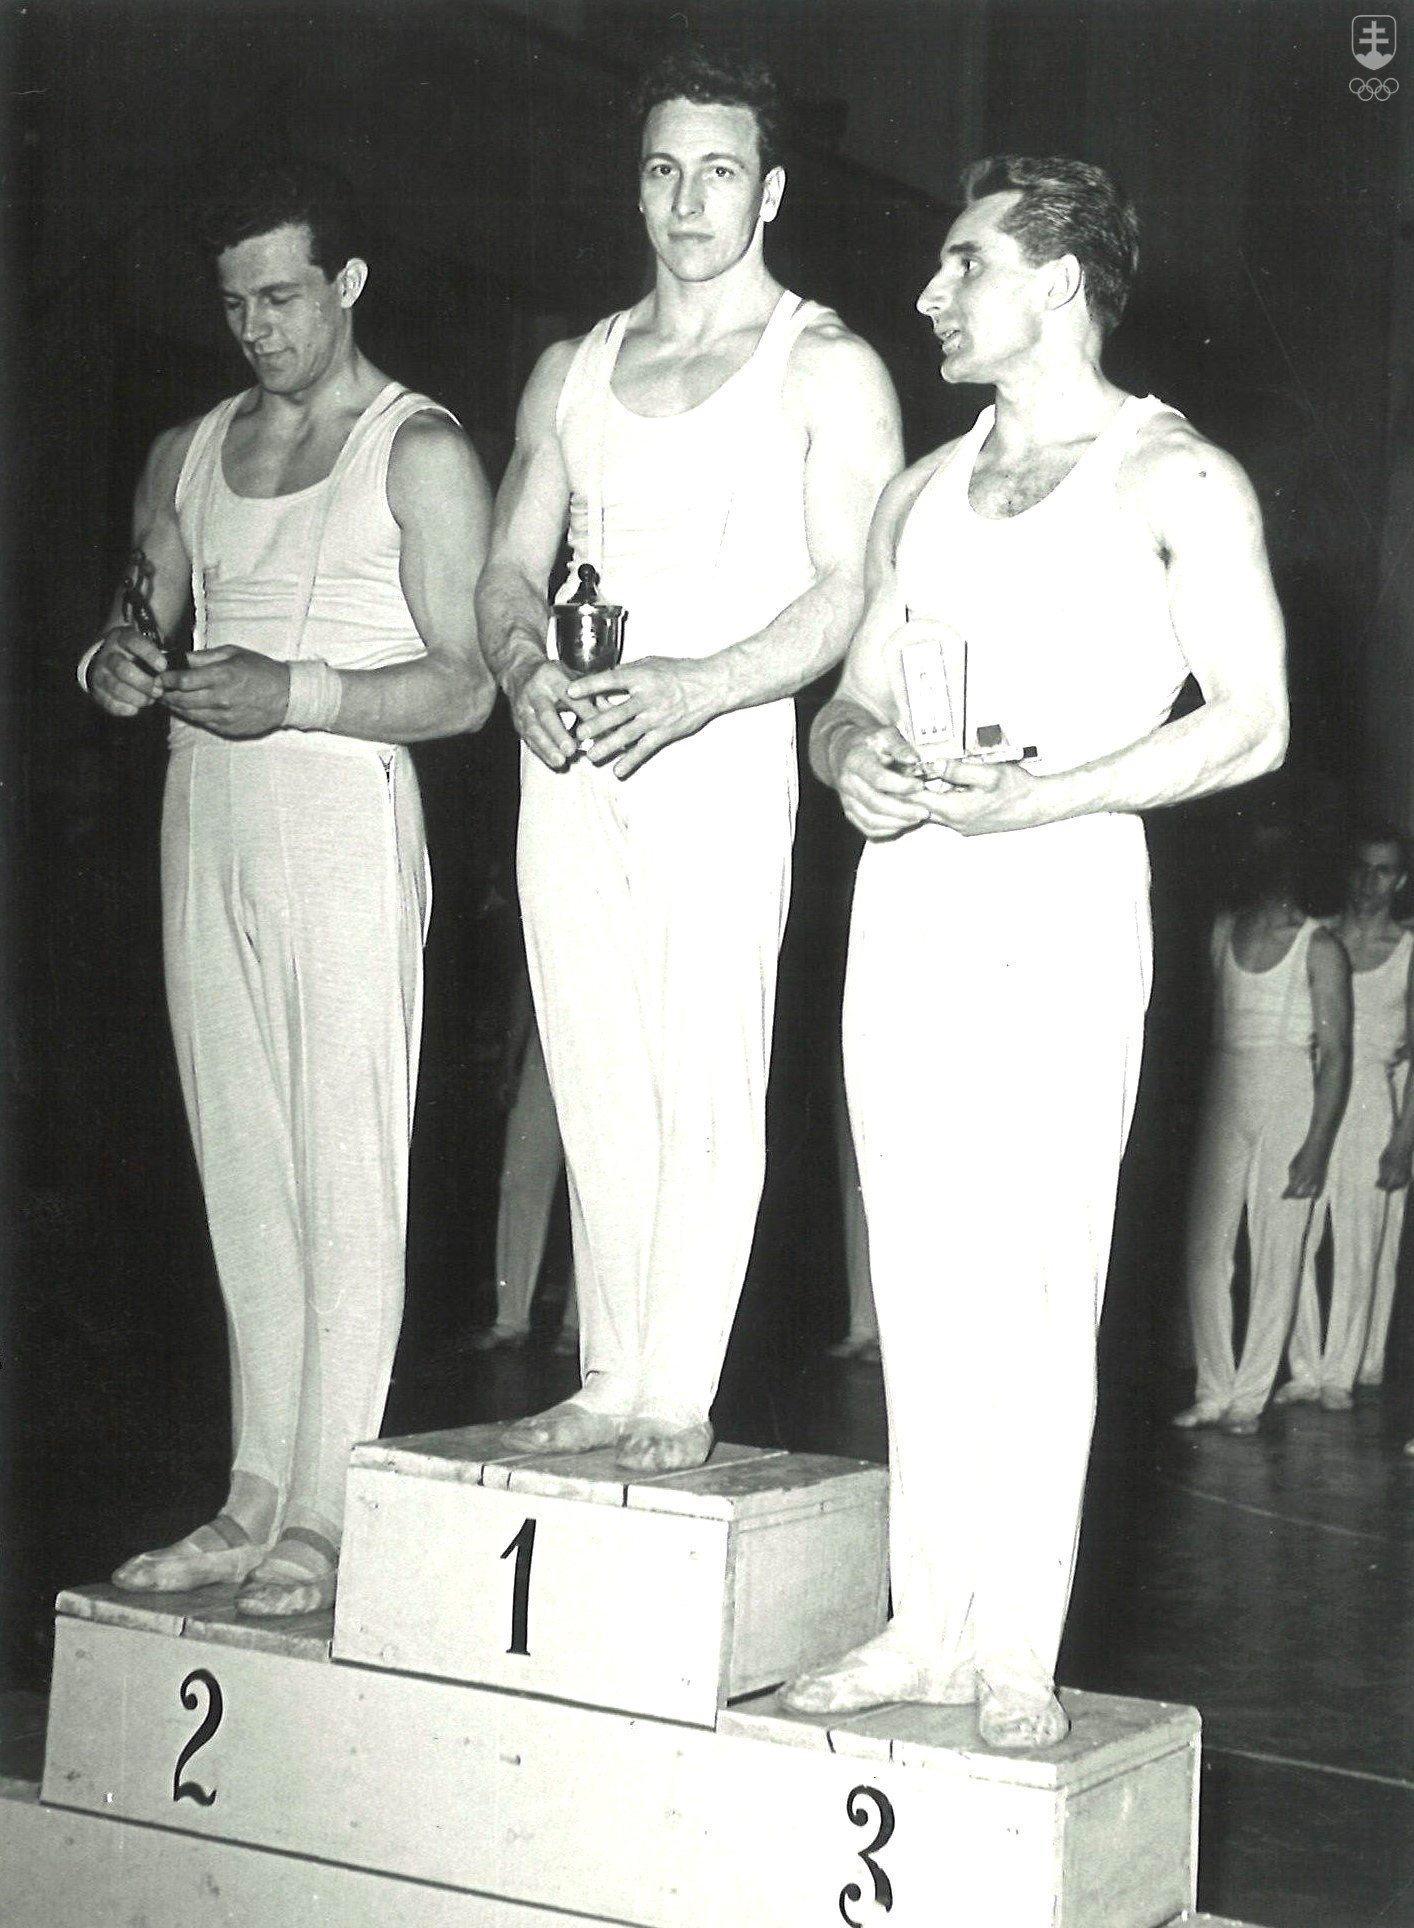 Ferdinand Daniš na najvyššom stupni - to bol veľmi častý obrázok na československých šampionátoch. V tomto prípade mu na stupni víťazov robili spoločnosť Klečka (vľavo) a Trmal.